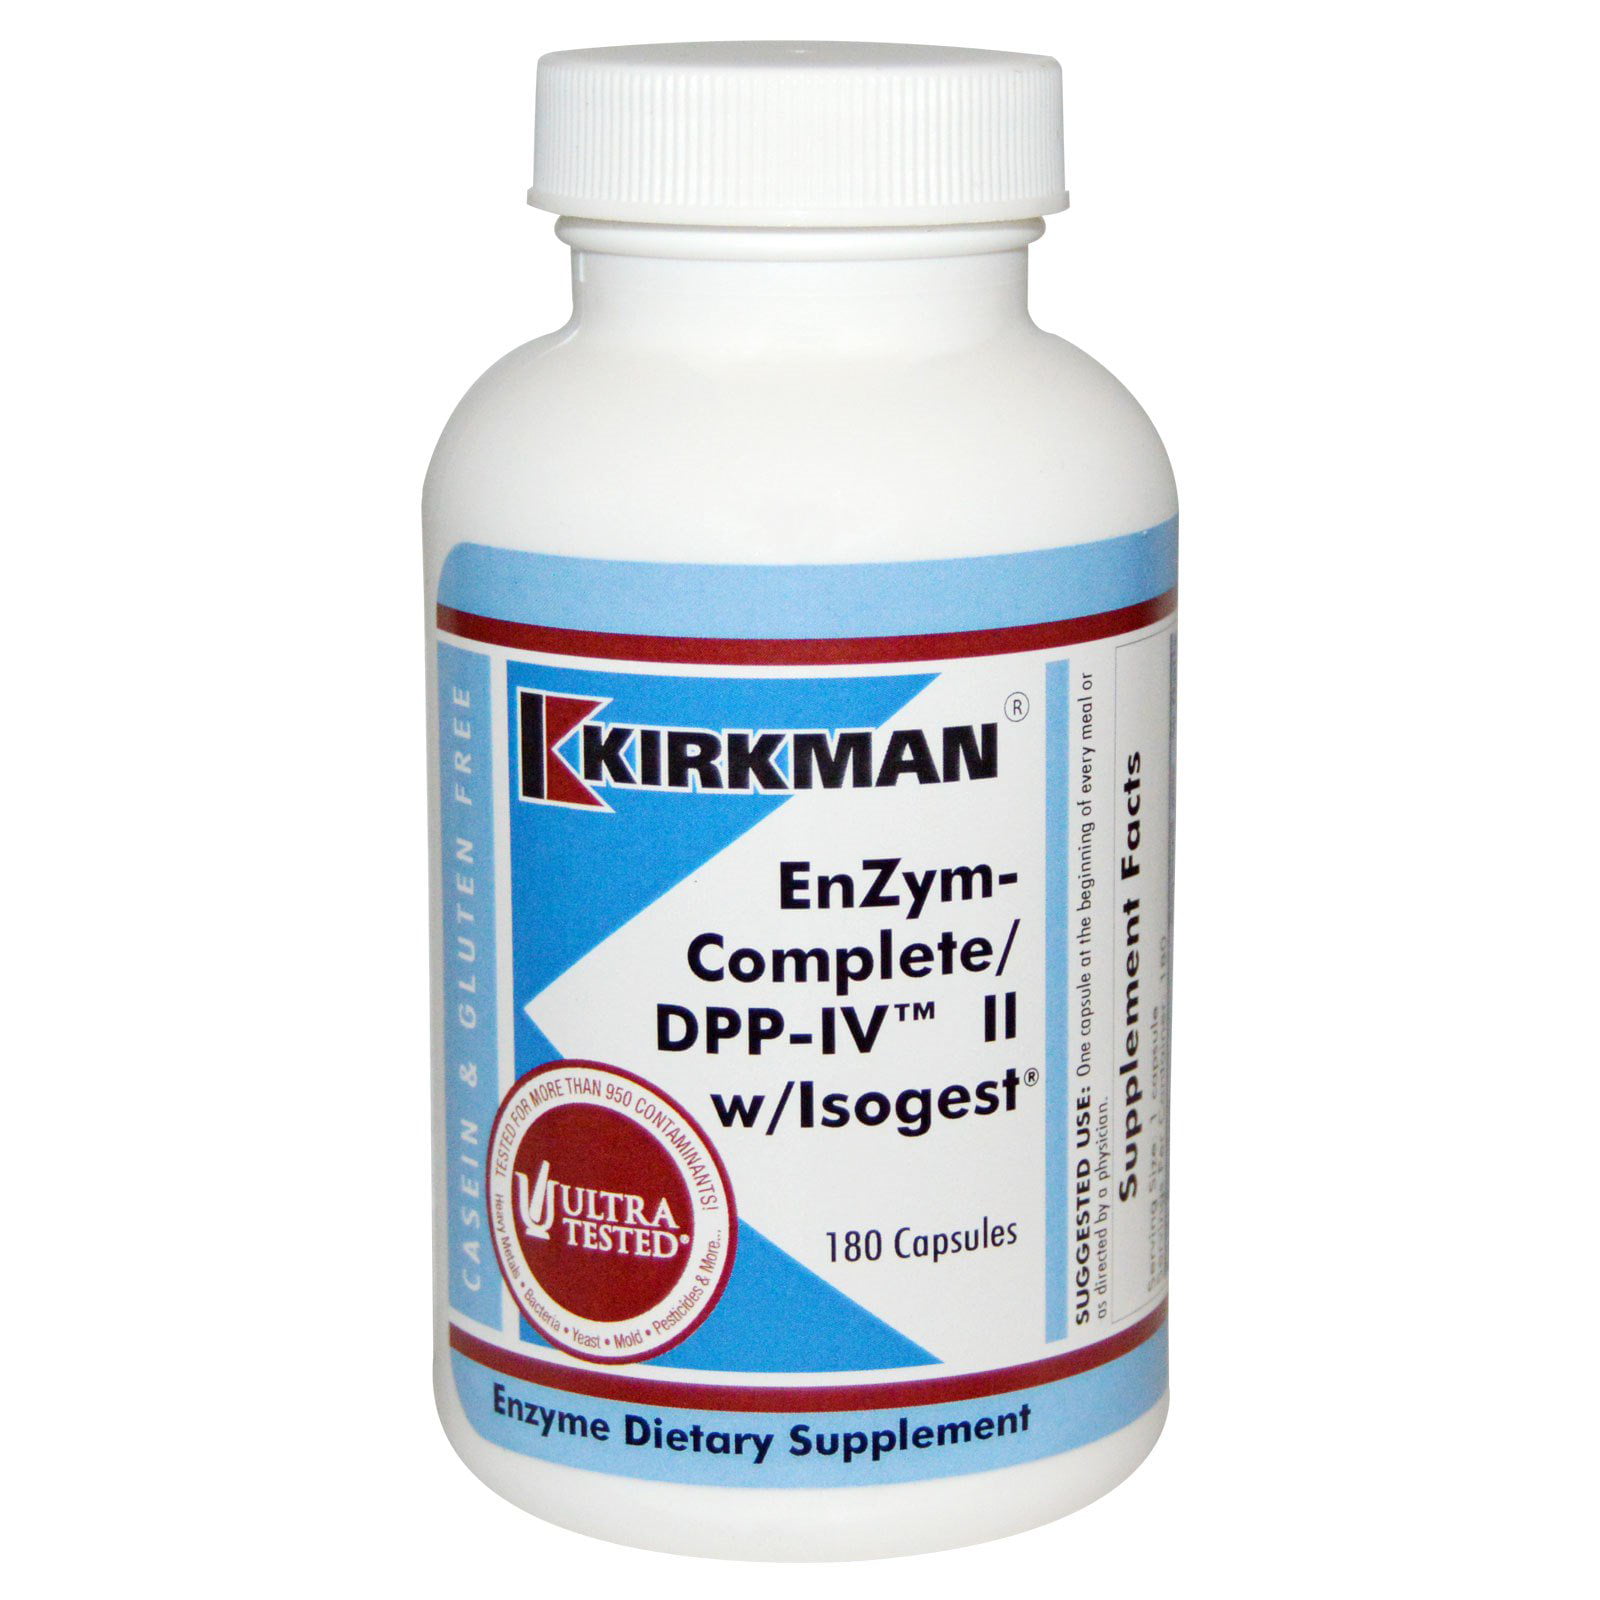 Kirkman walmart pharmacy - Search